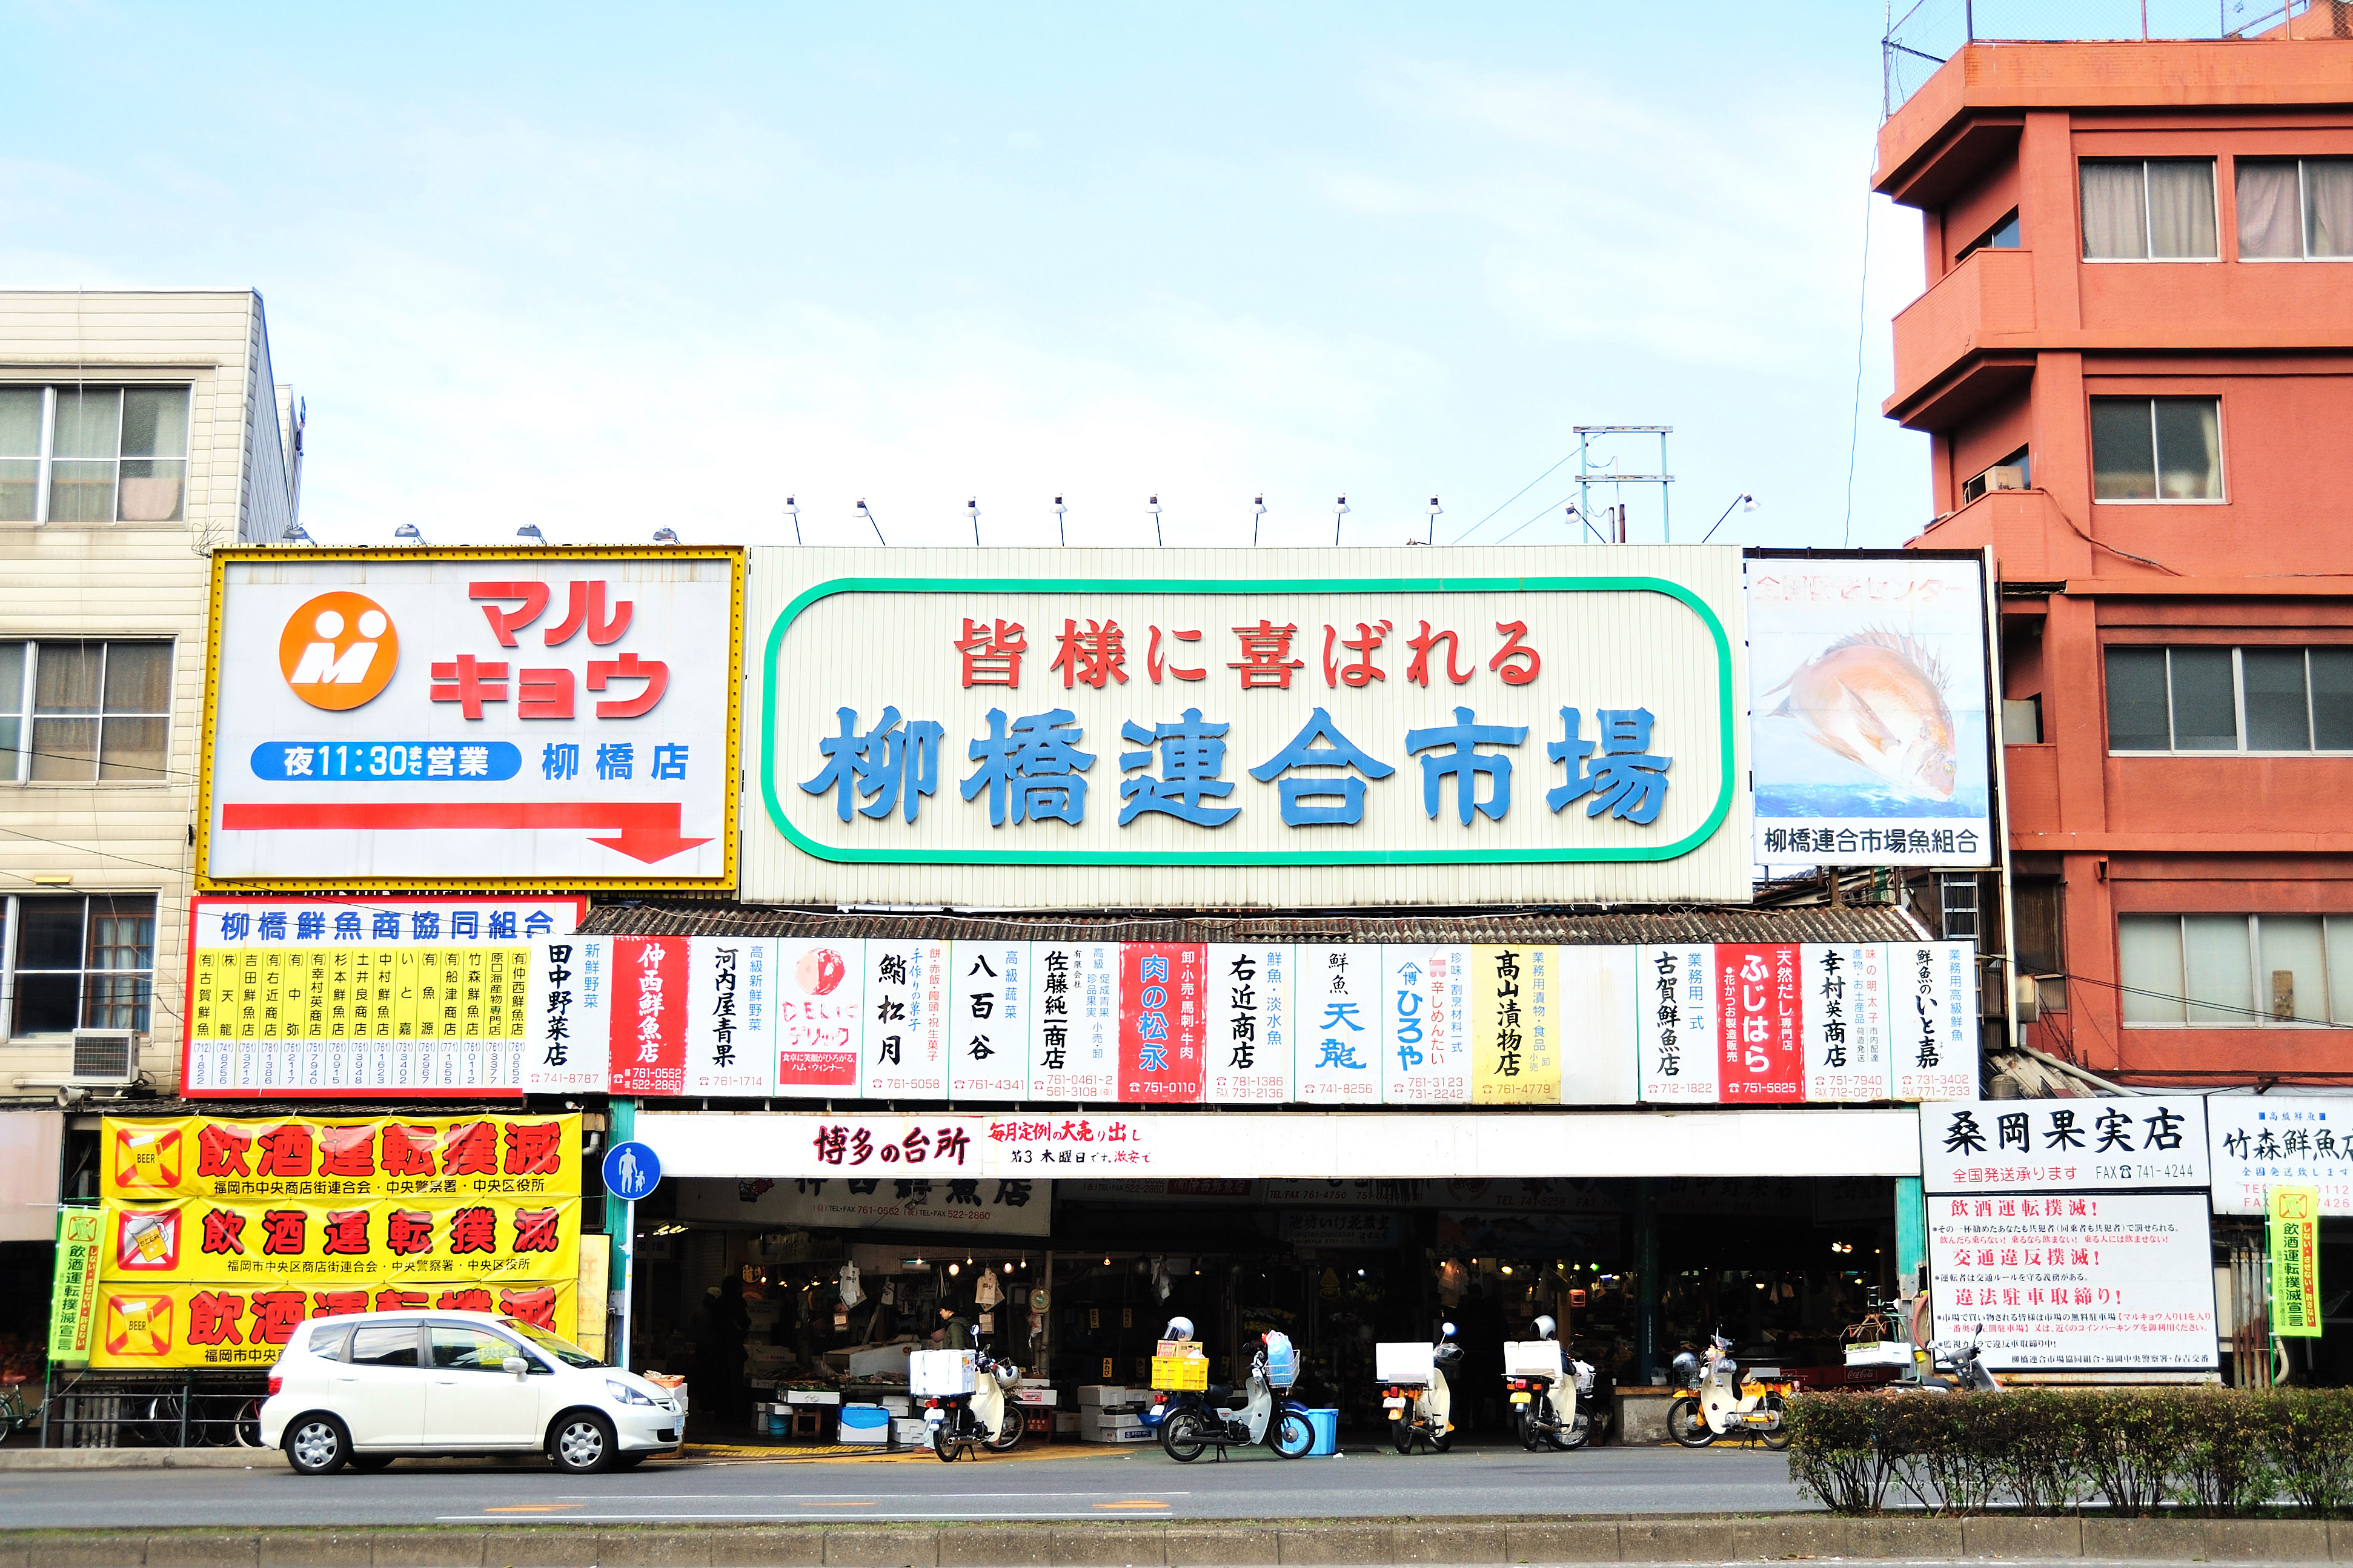 柳橋連合市場(2009)の画像